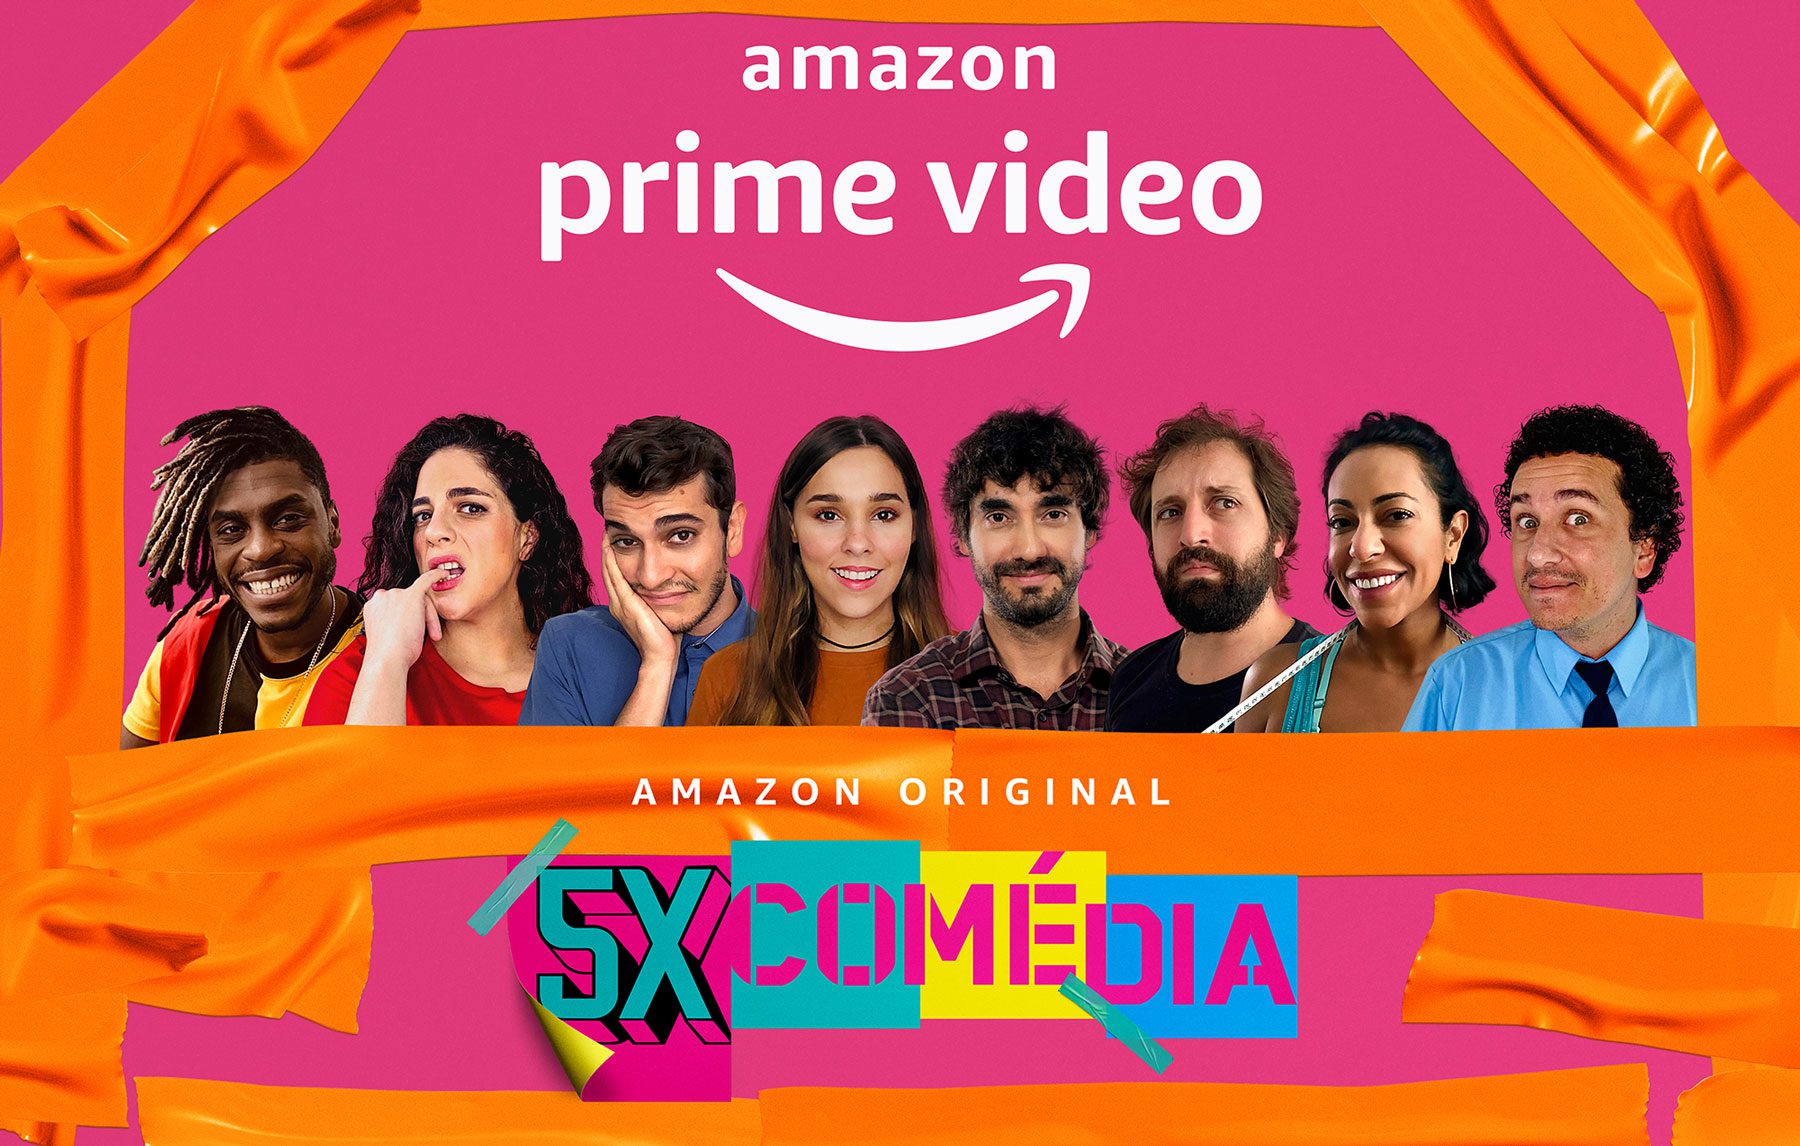 5x Comédia | Conheça a série com Rafael Portugal no Amazon Prime Video 4